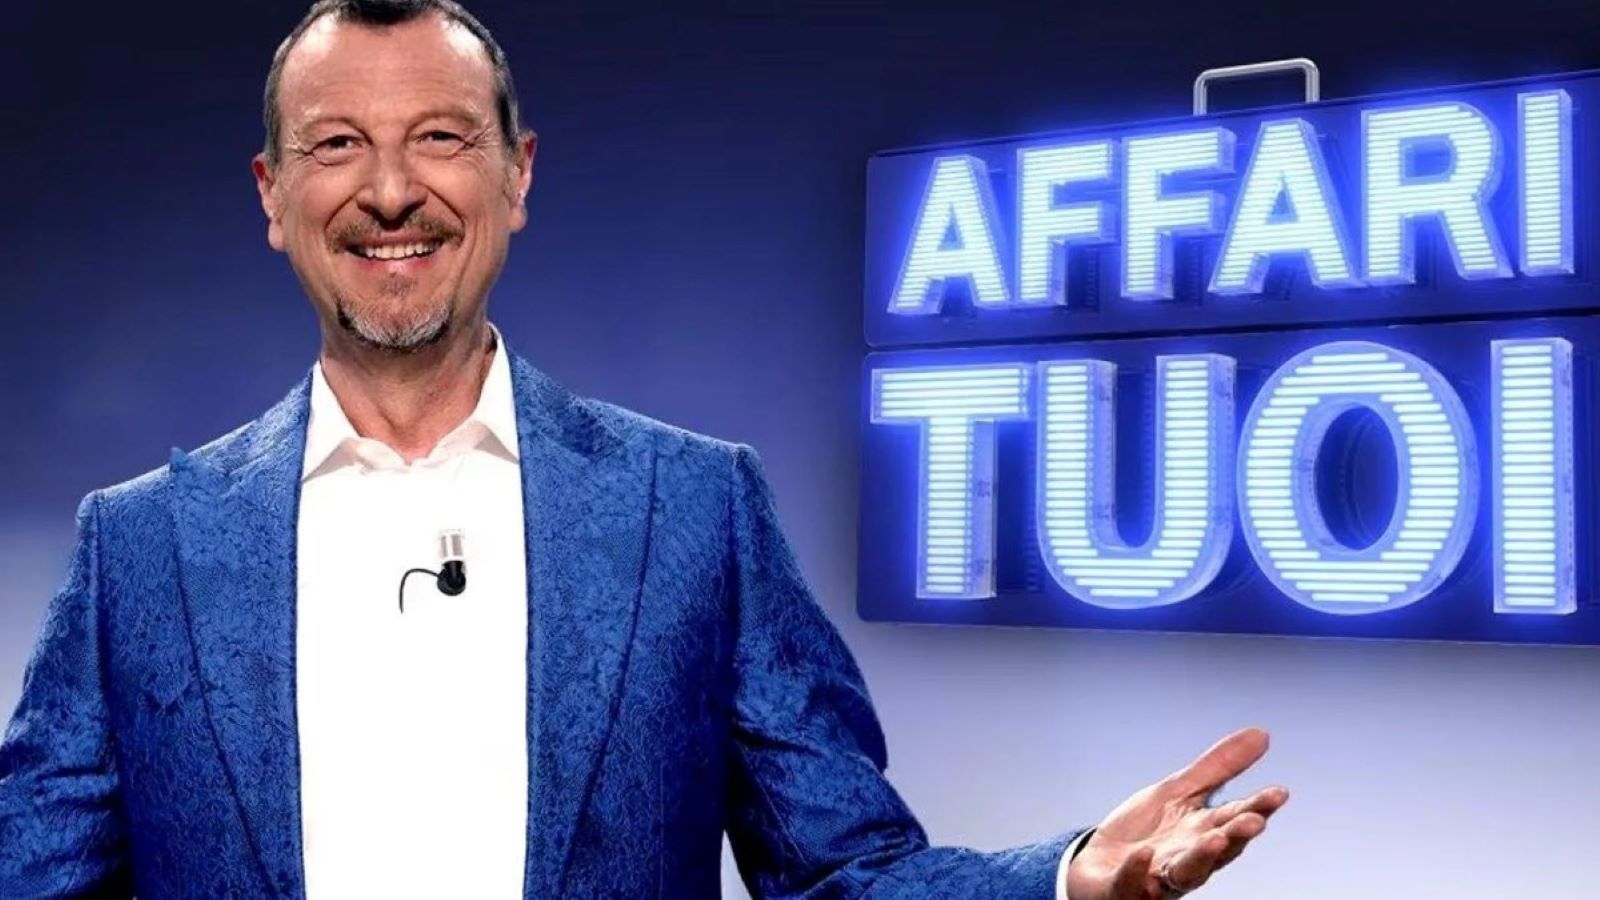 Affari Tuoi - Speciale Lotteria Italia stasera su Rai 1: Amadeus annuncia i biglietti vincenti